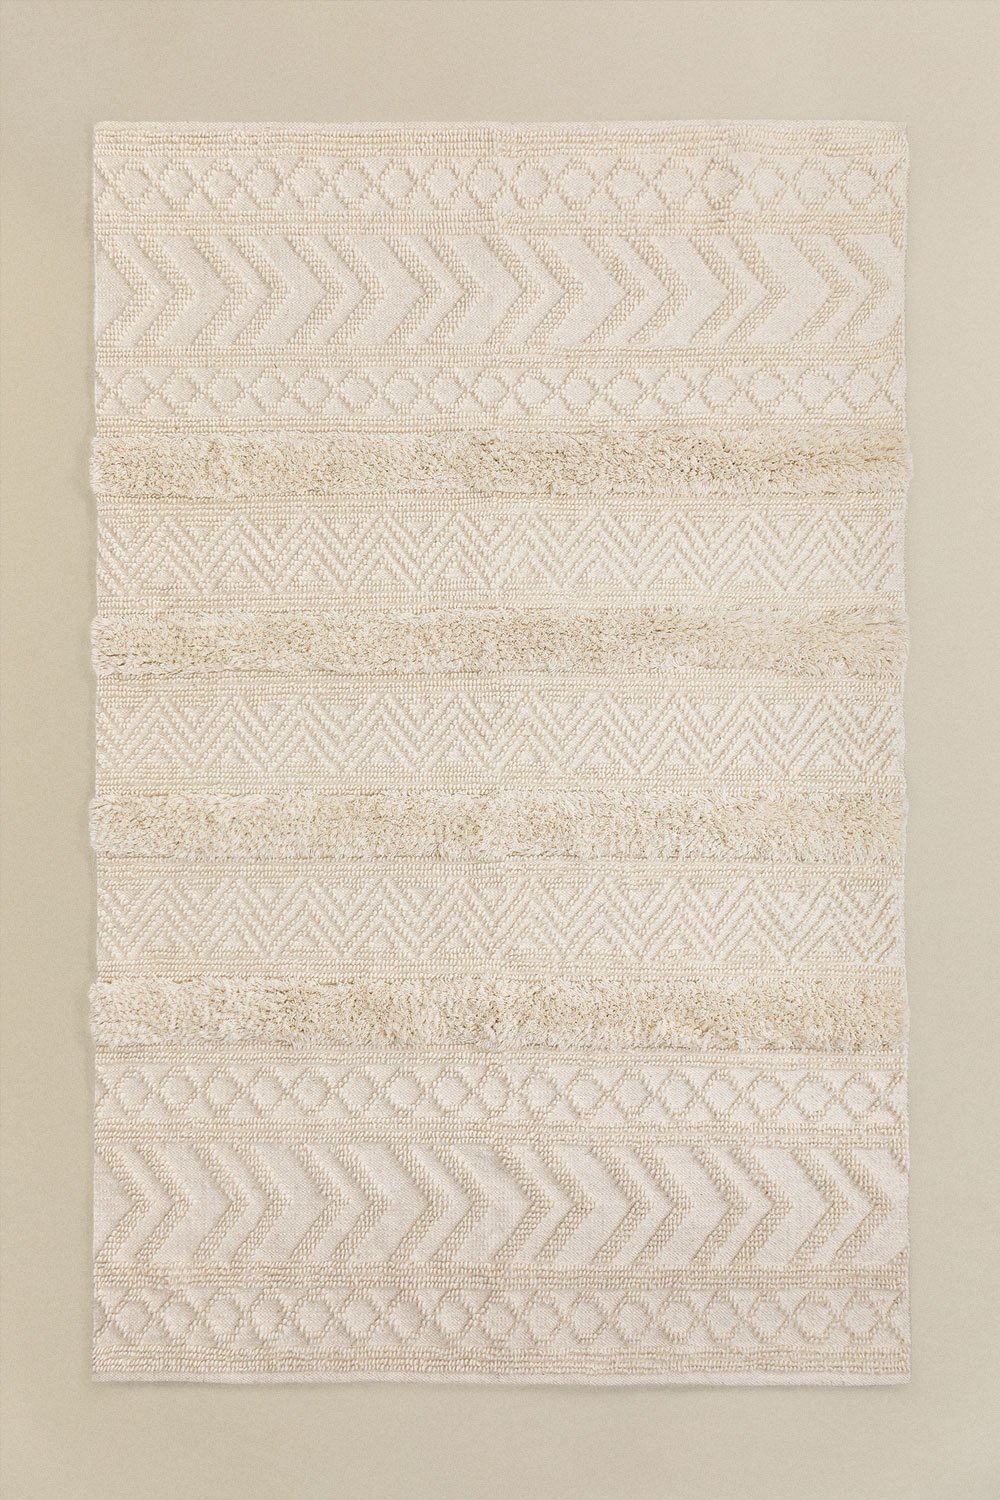 Tappeto in lana e cotone (255x165 cm) Lissi, immagine della galleria 1